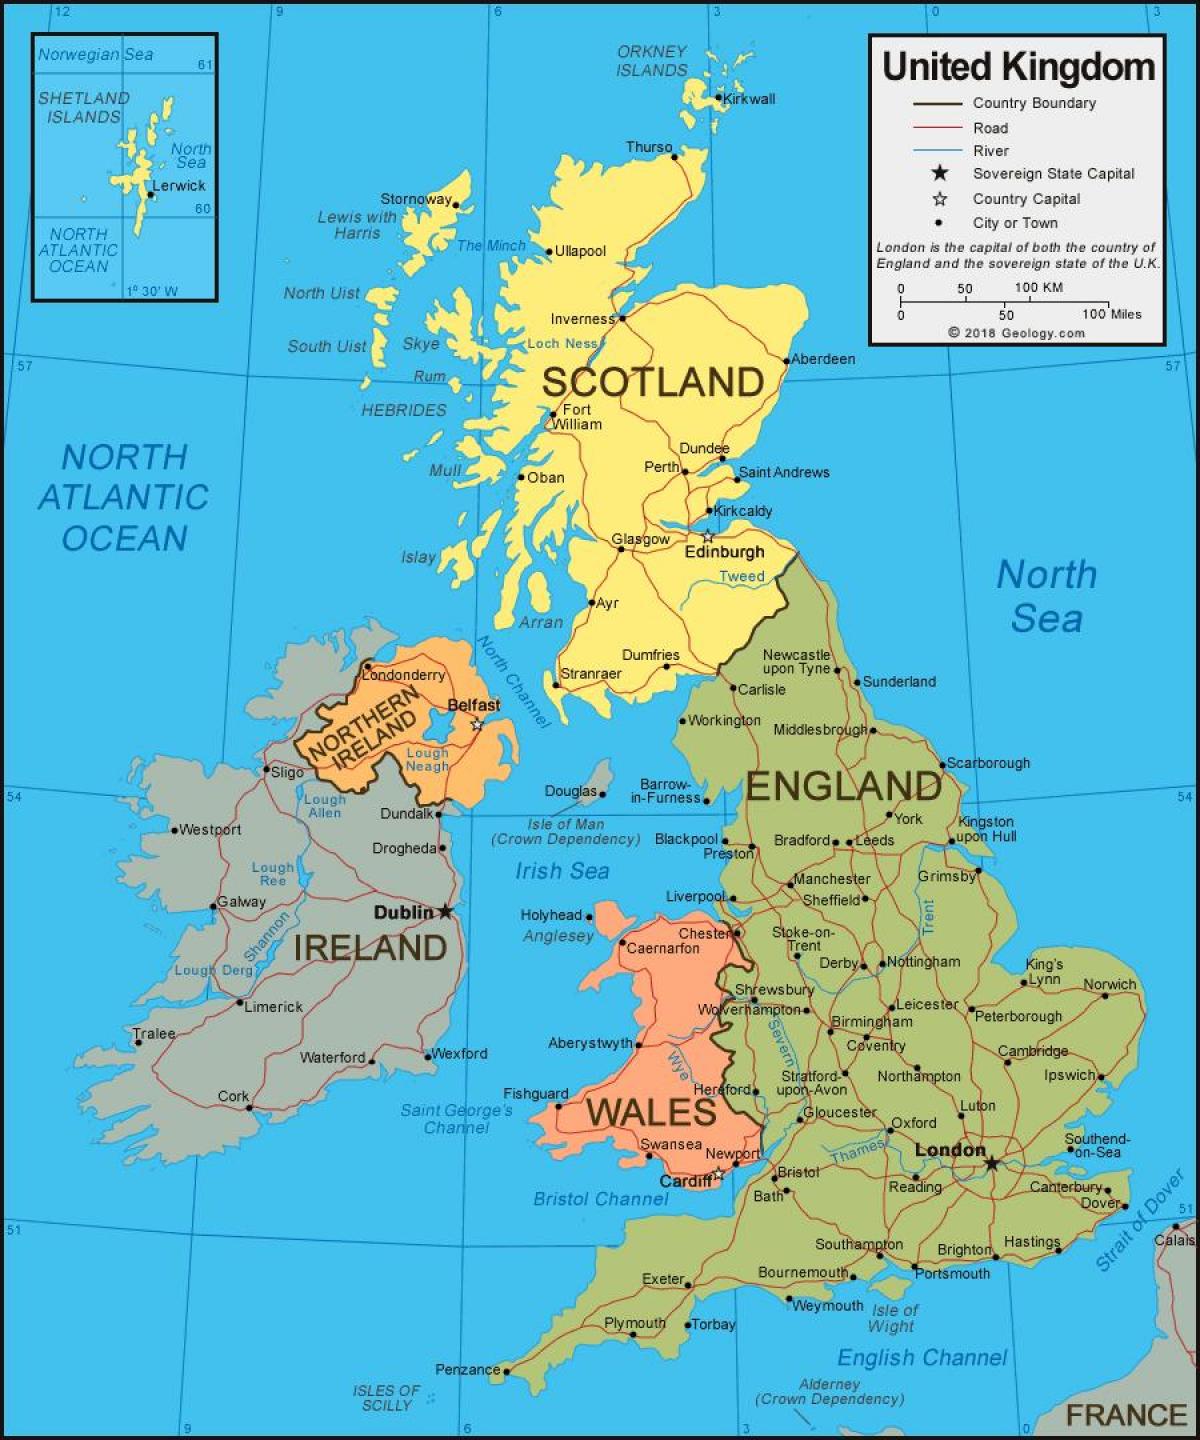 Regno Unito (Regno Unito) su una mappa